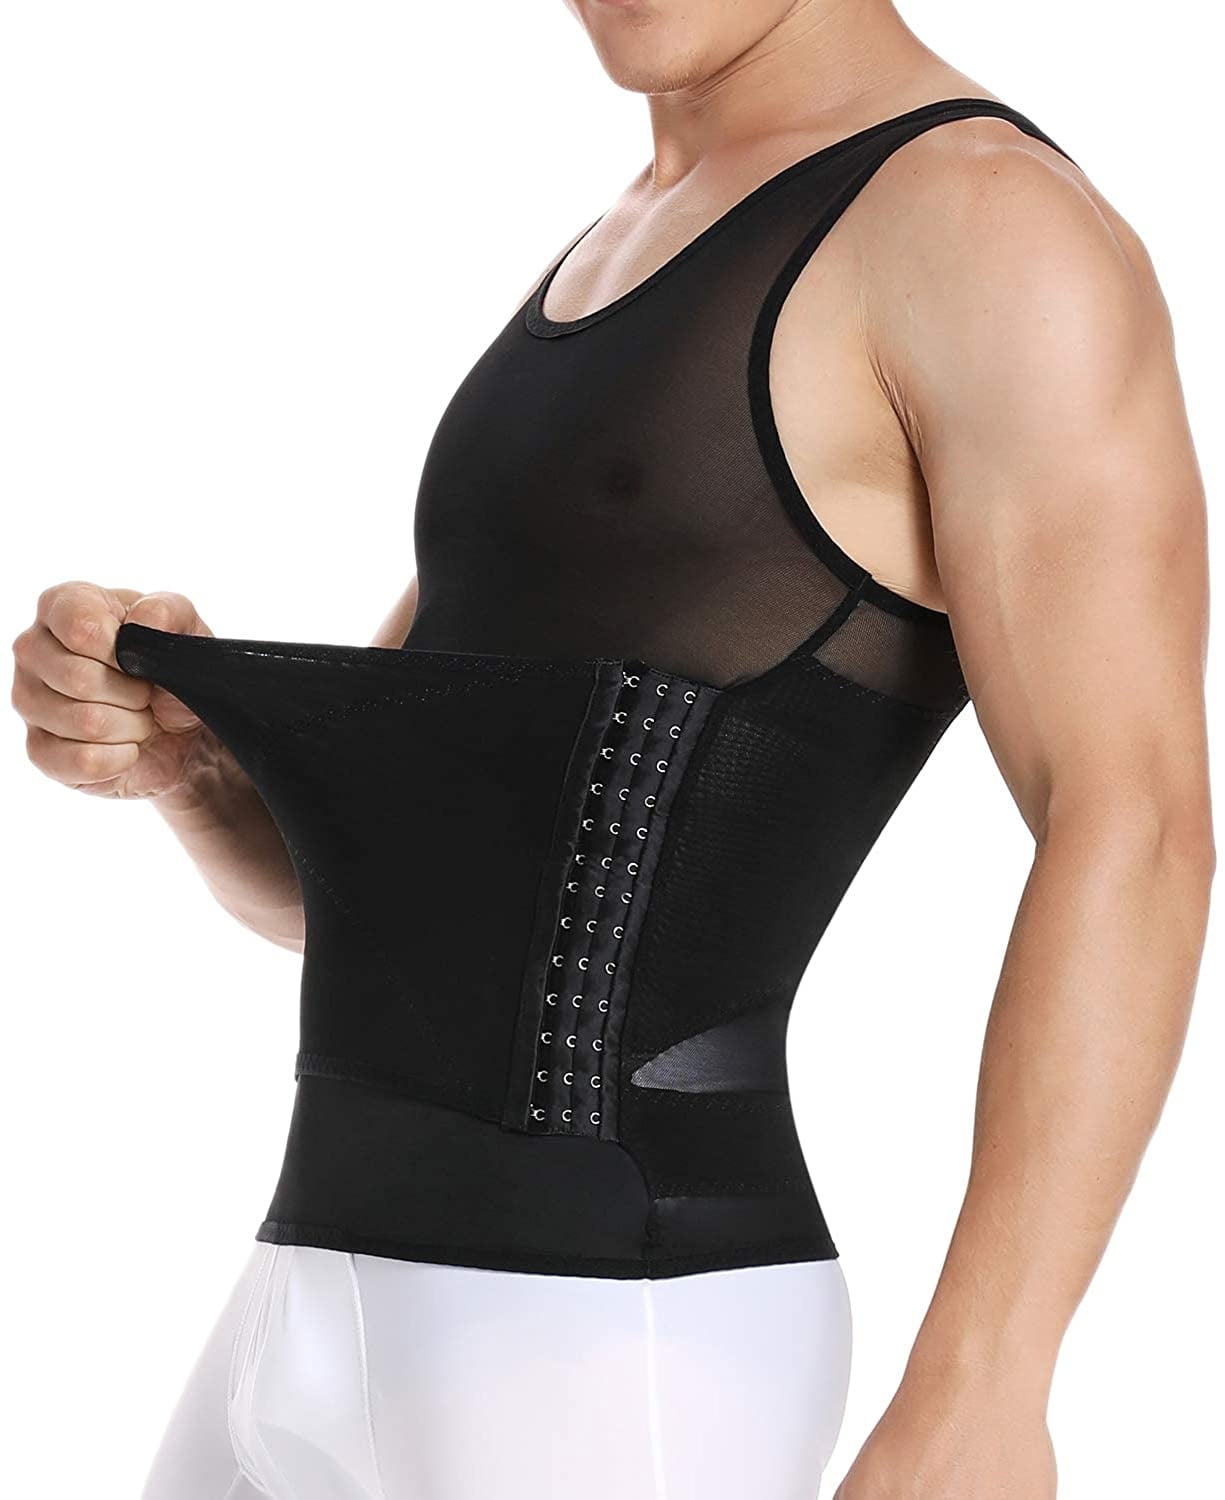 Men Body Slimming Vest Tummy Shaper Underwear Compression Waist Trainer Tank Top